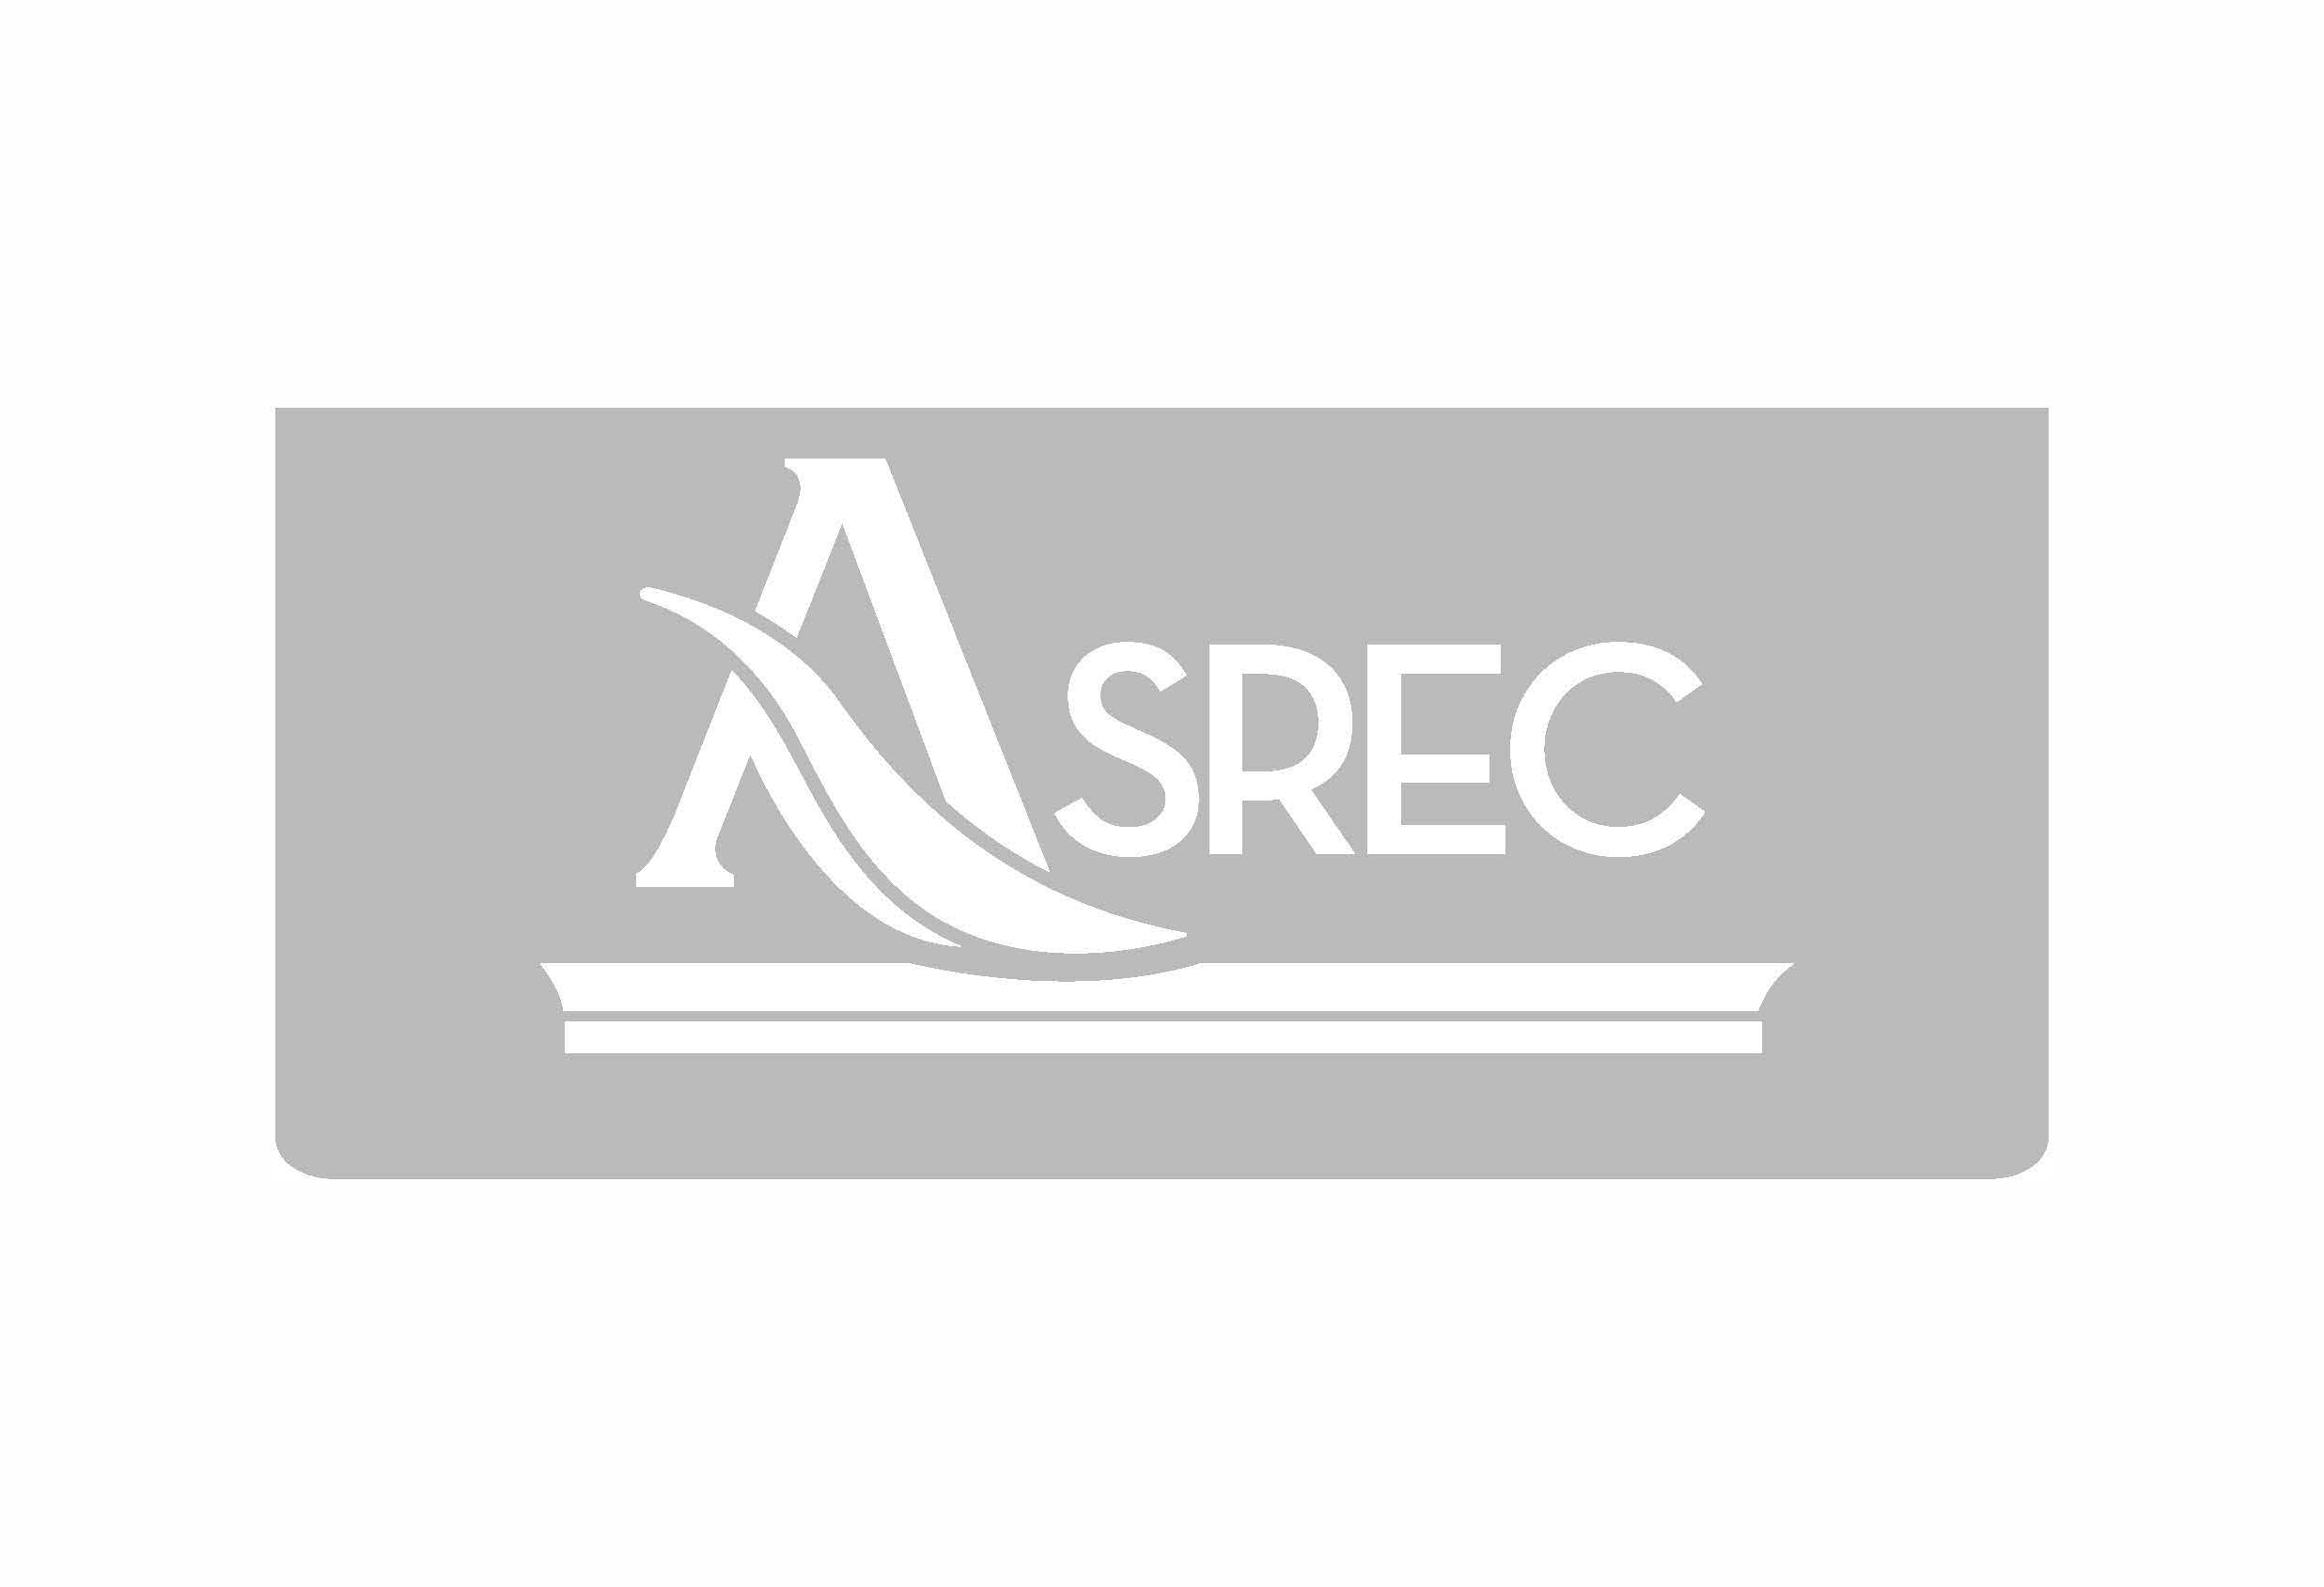 asrec logo